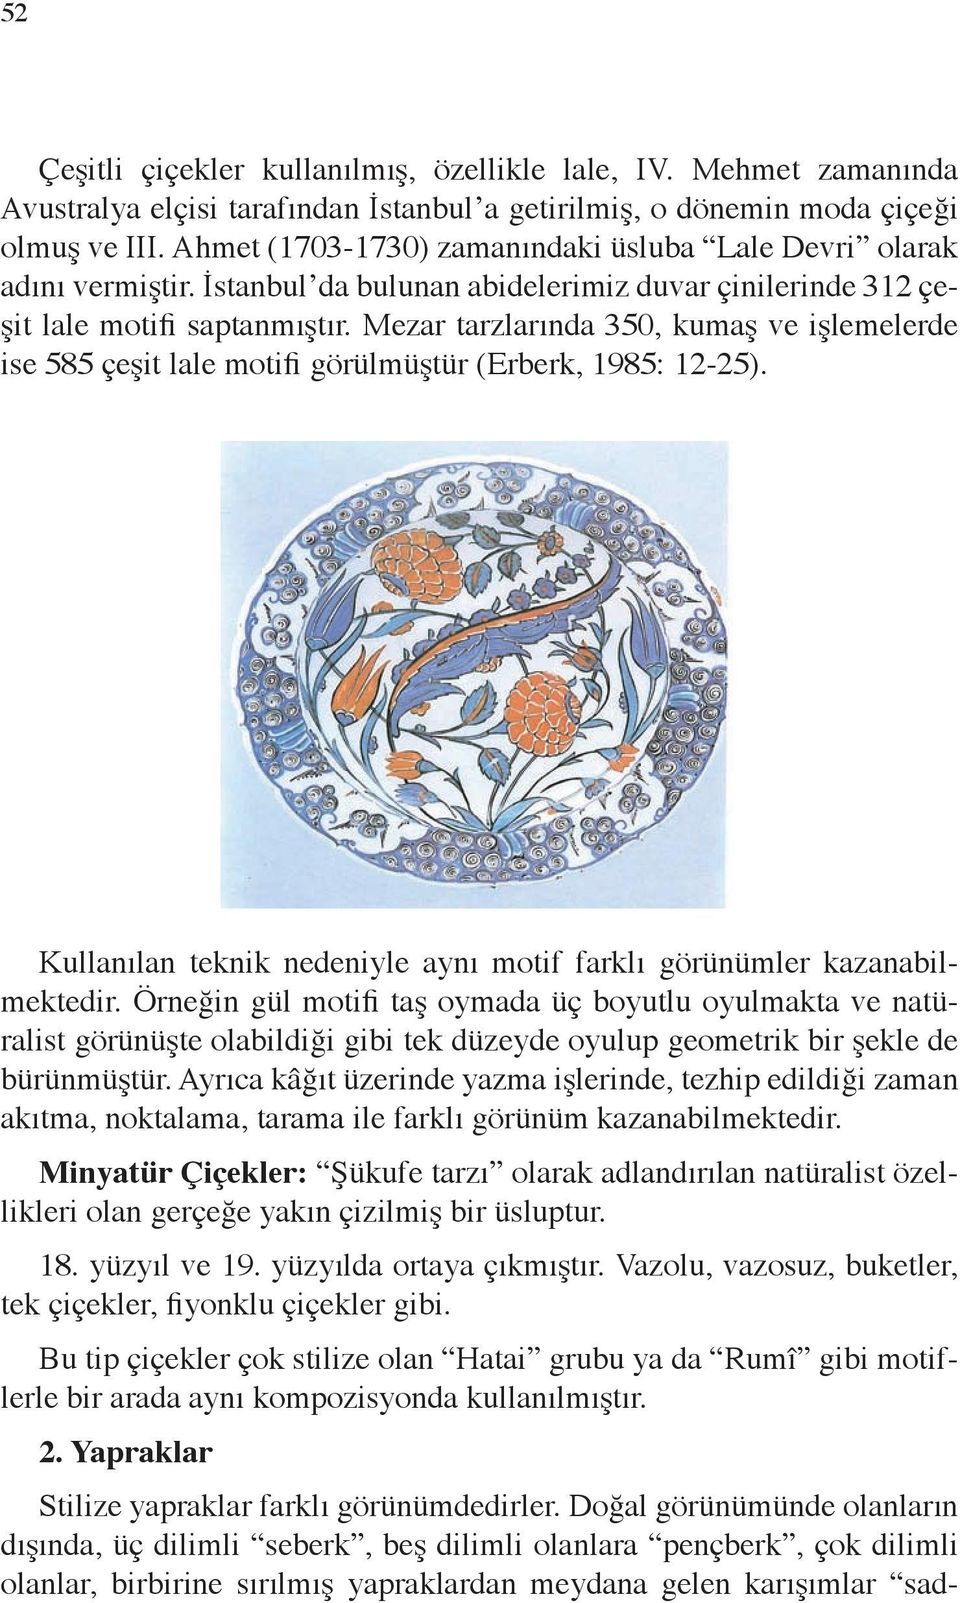 Mezar tarzlarında 350, kumaş ve işlemelerde ise 585 çeşit lale motifi görülmüştür (Erberk, 1985: 12-25). Kullanılan teknik nedeniyle aynı motif farklı görünümler kazanabilmektedir.